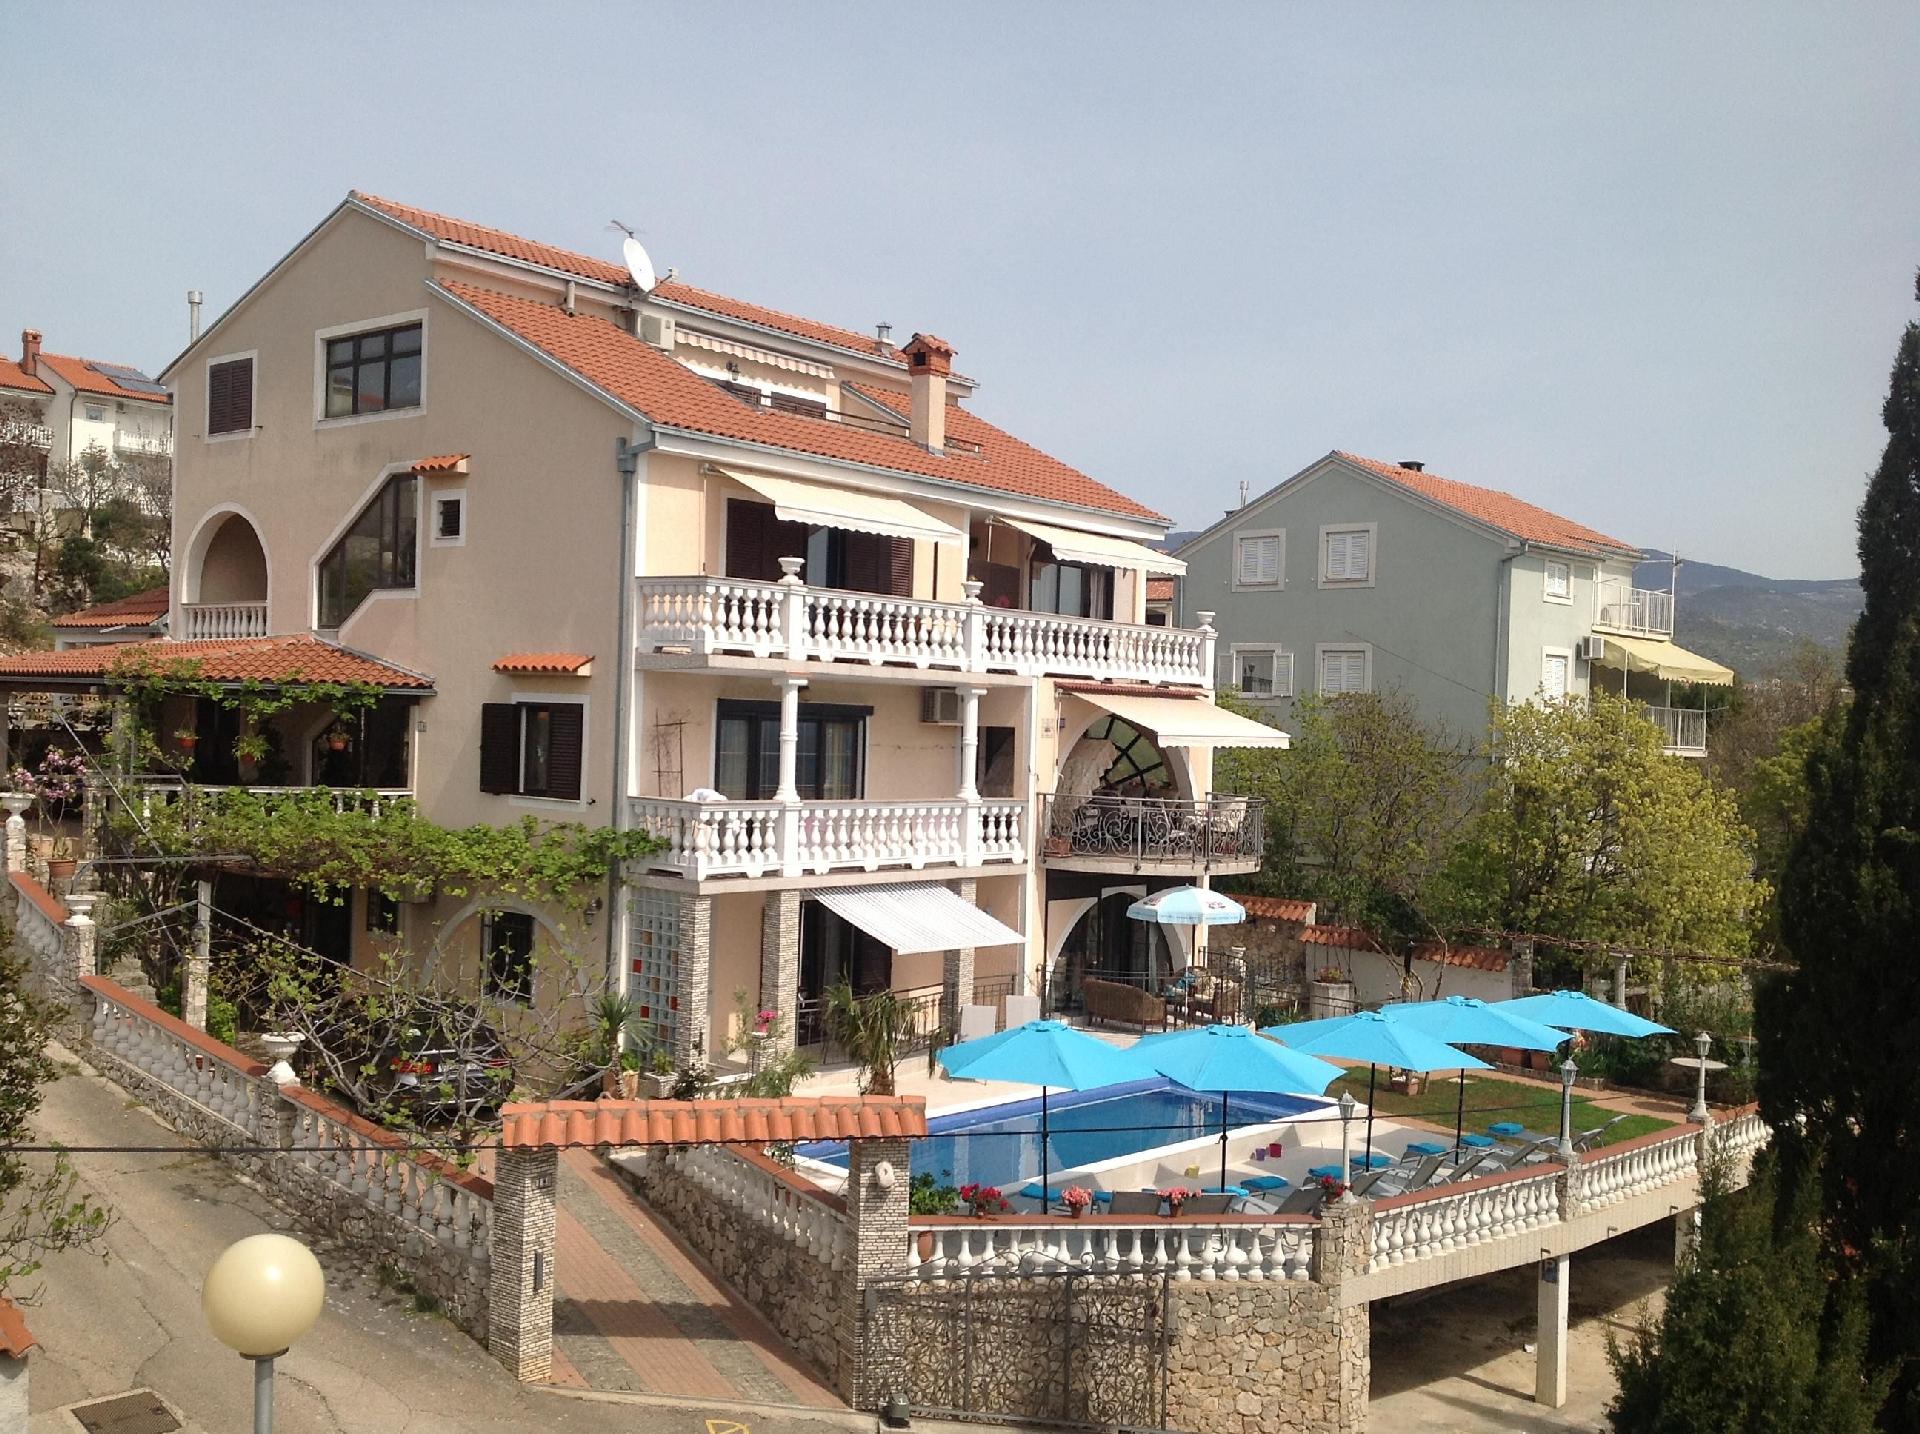 Appartement in Novi Vinodolski mit Garten, Terrass Ferienhaus in Europa